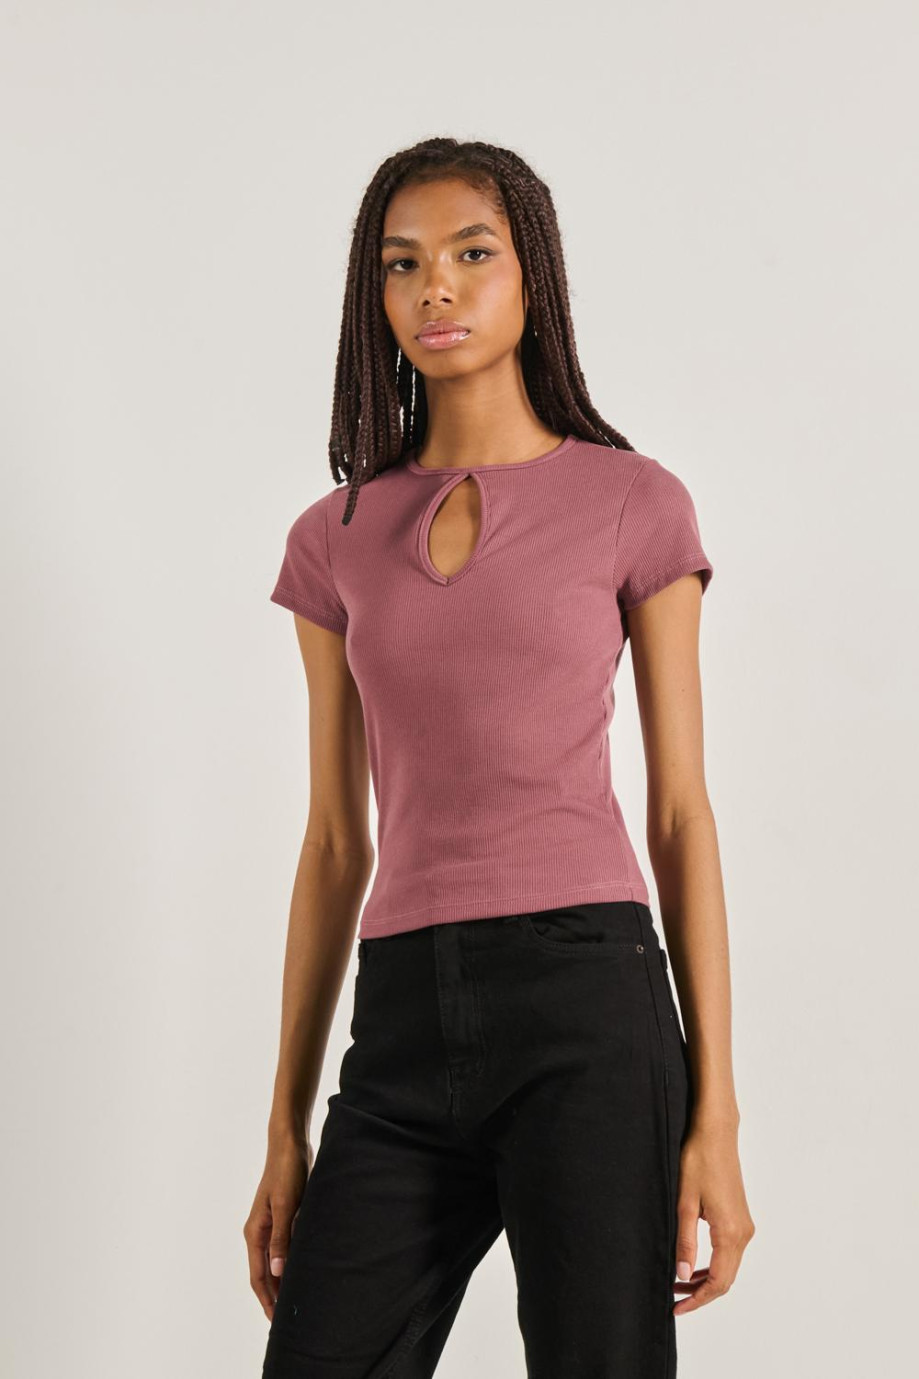 Camiseta rosada oscura con manga corta y texturas acanaladas